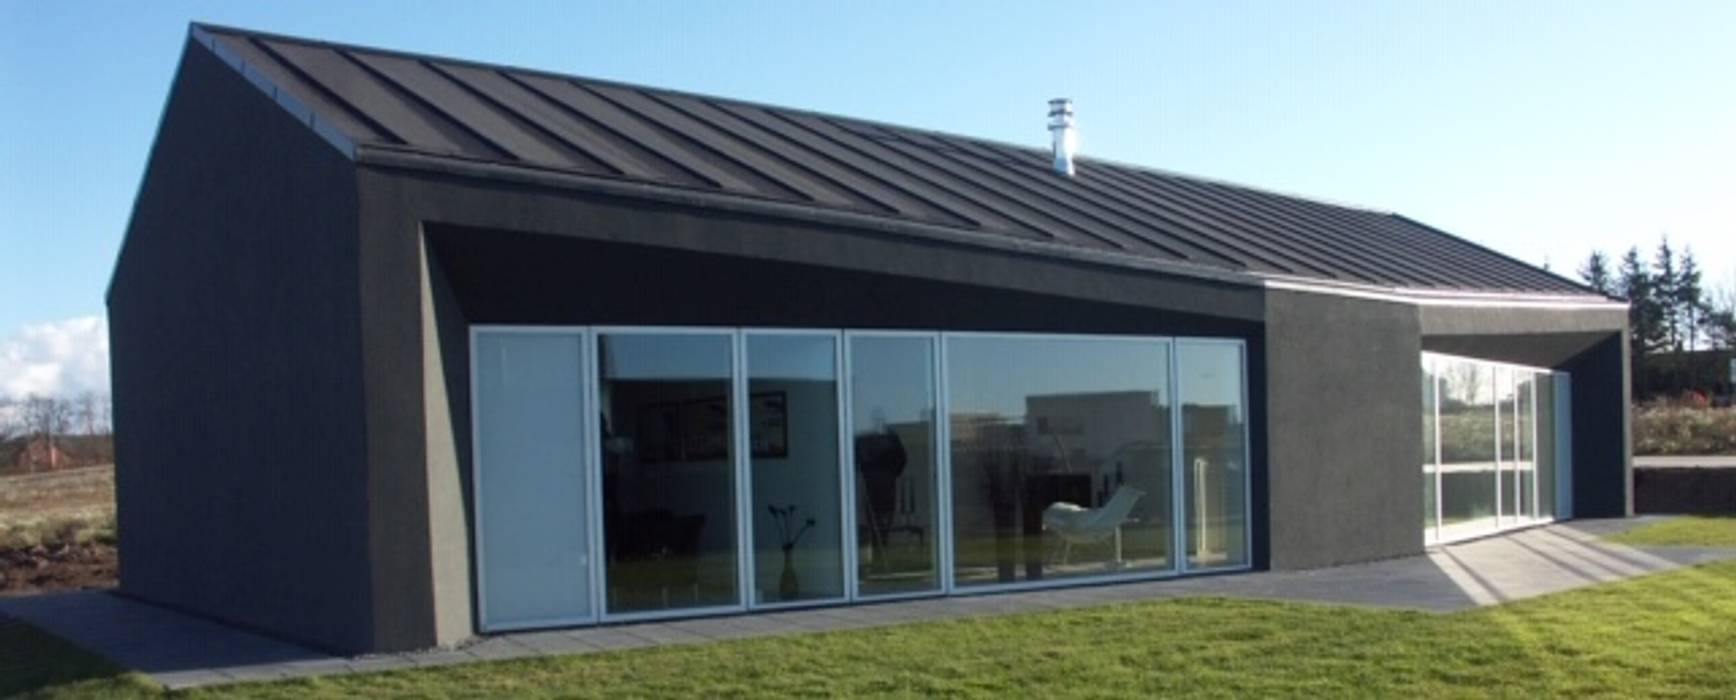 Energooszczędny dom w Danii., DOMIKON DOMIKON Passive house